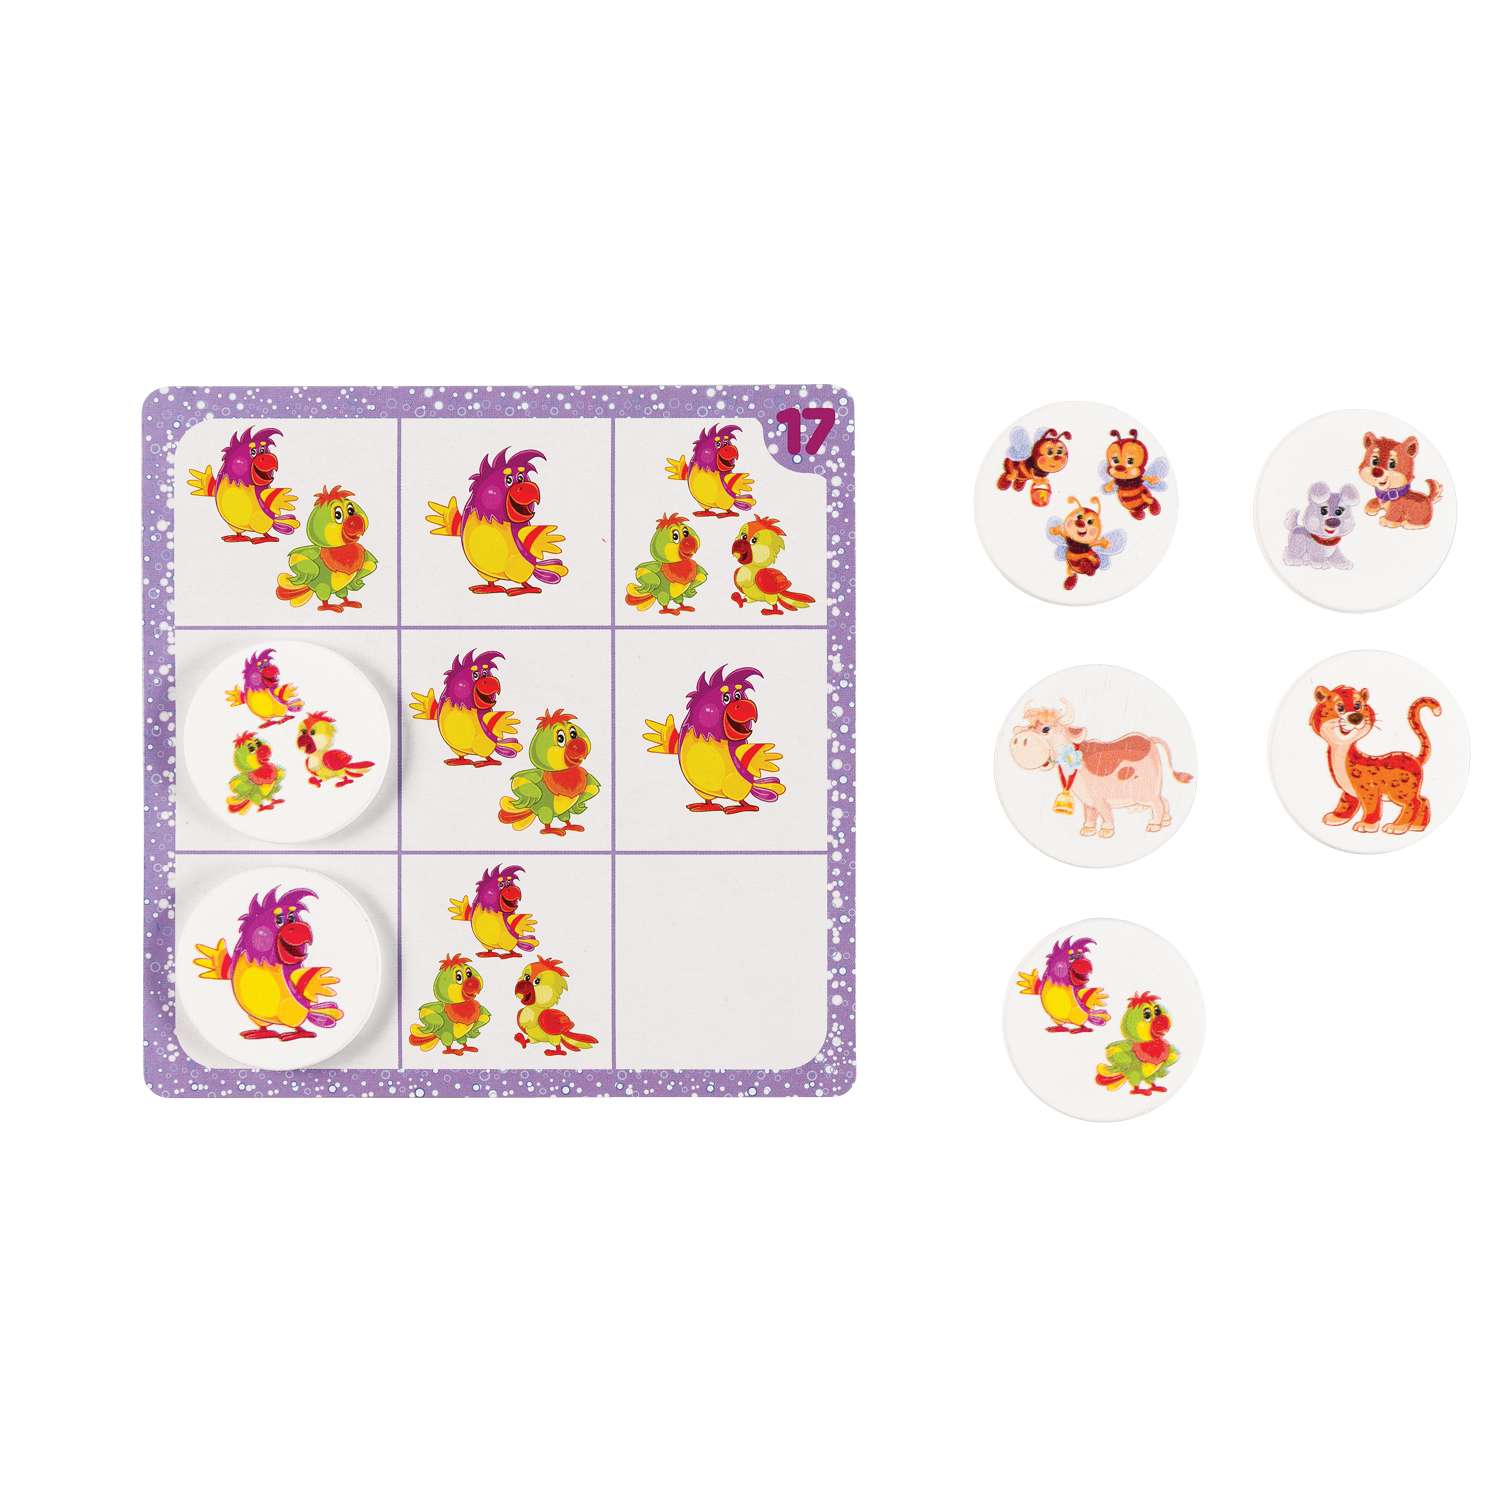 Игра развивающая Step Puzzle Животные Судоку для самых маленьких IQ step 89832 - фото 4